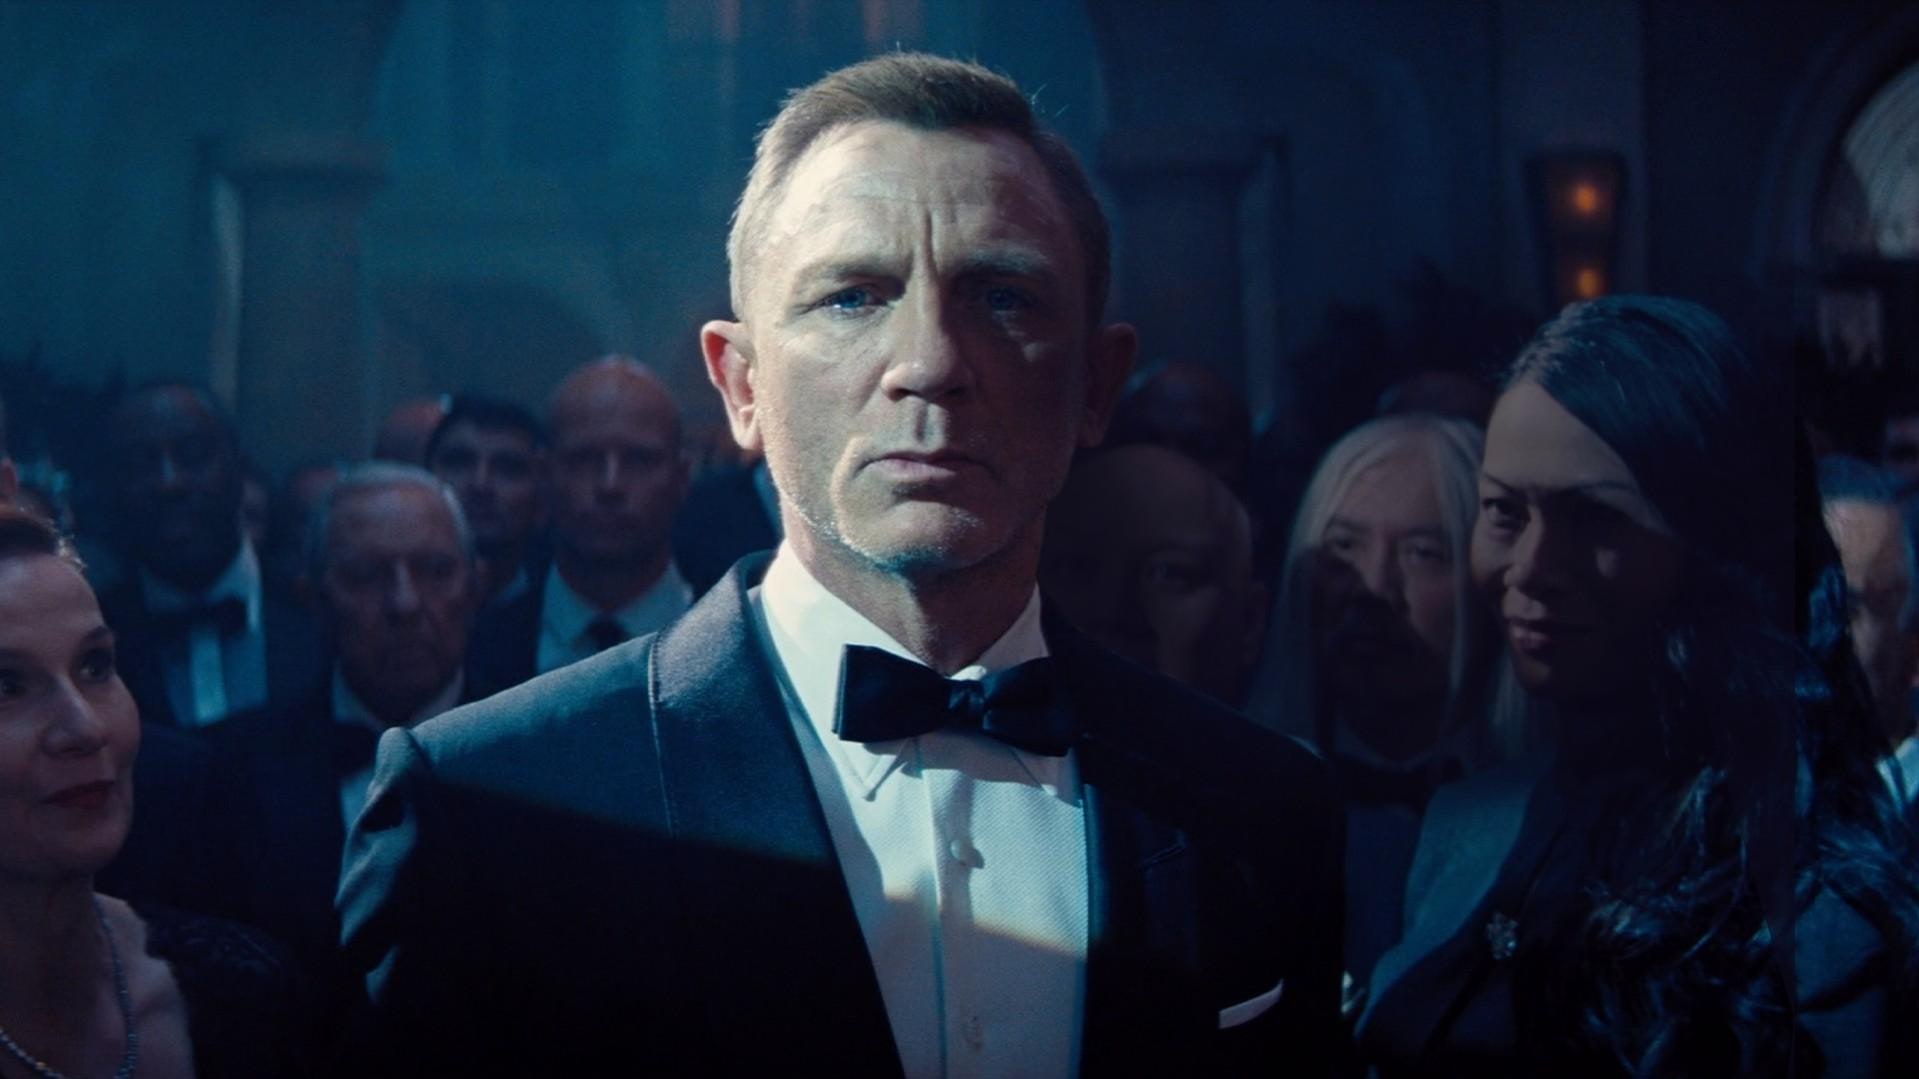 Живешь только дважды как менялся образ Джеймса Бонда в кино и что будет с агентом 007 дальше